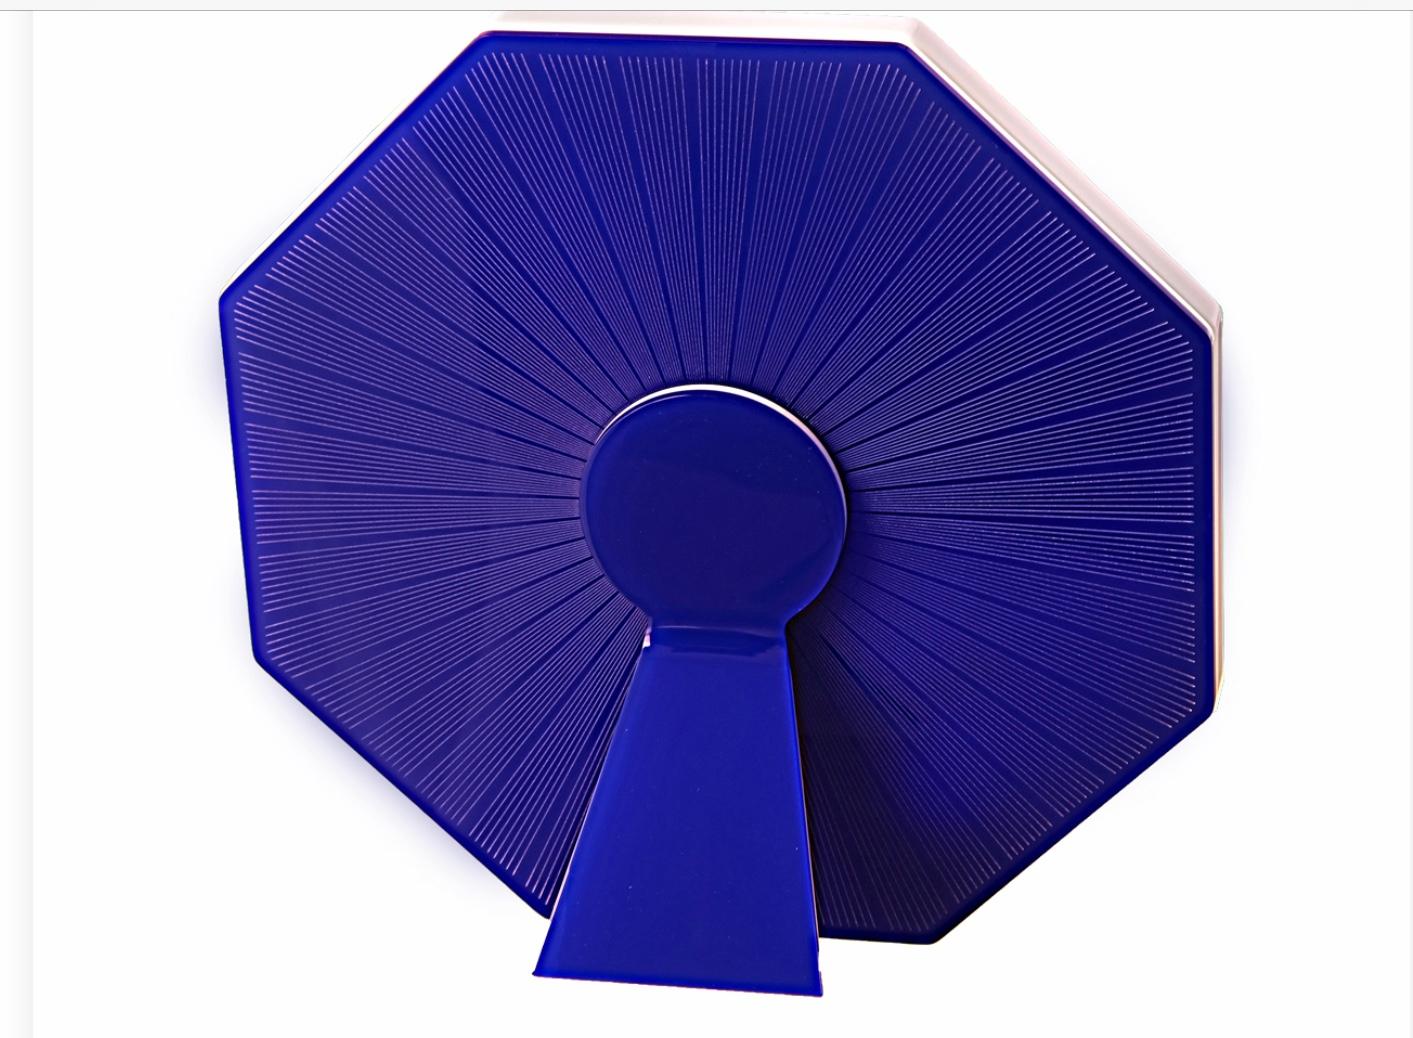 Sharing Otto blue est une édition multiple unique de la collection Art with Heart de cadres photo pop recto-verso de Laura G Italie. Il est beau où que vous le regardiez, sa surface est décorée à l'avant et à l'arrière, un exemple typique de cadre